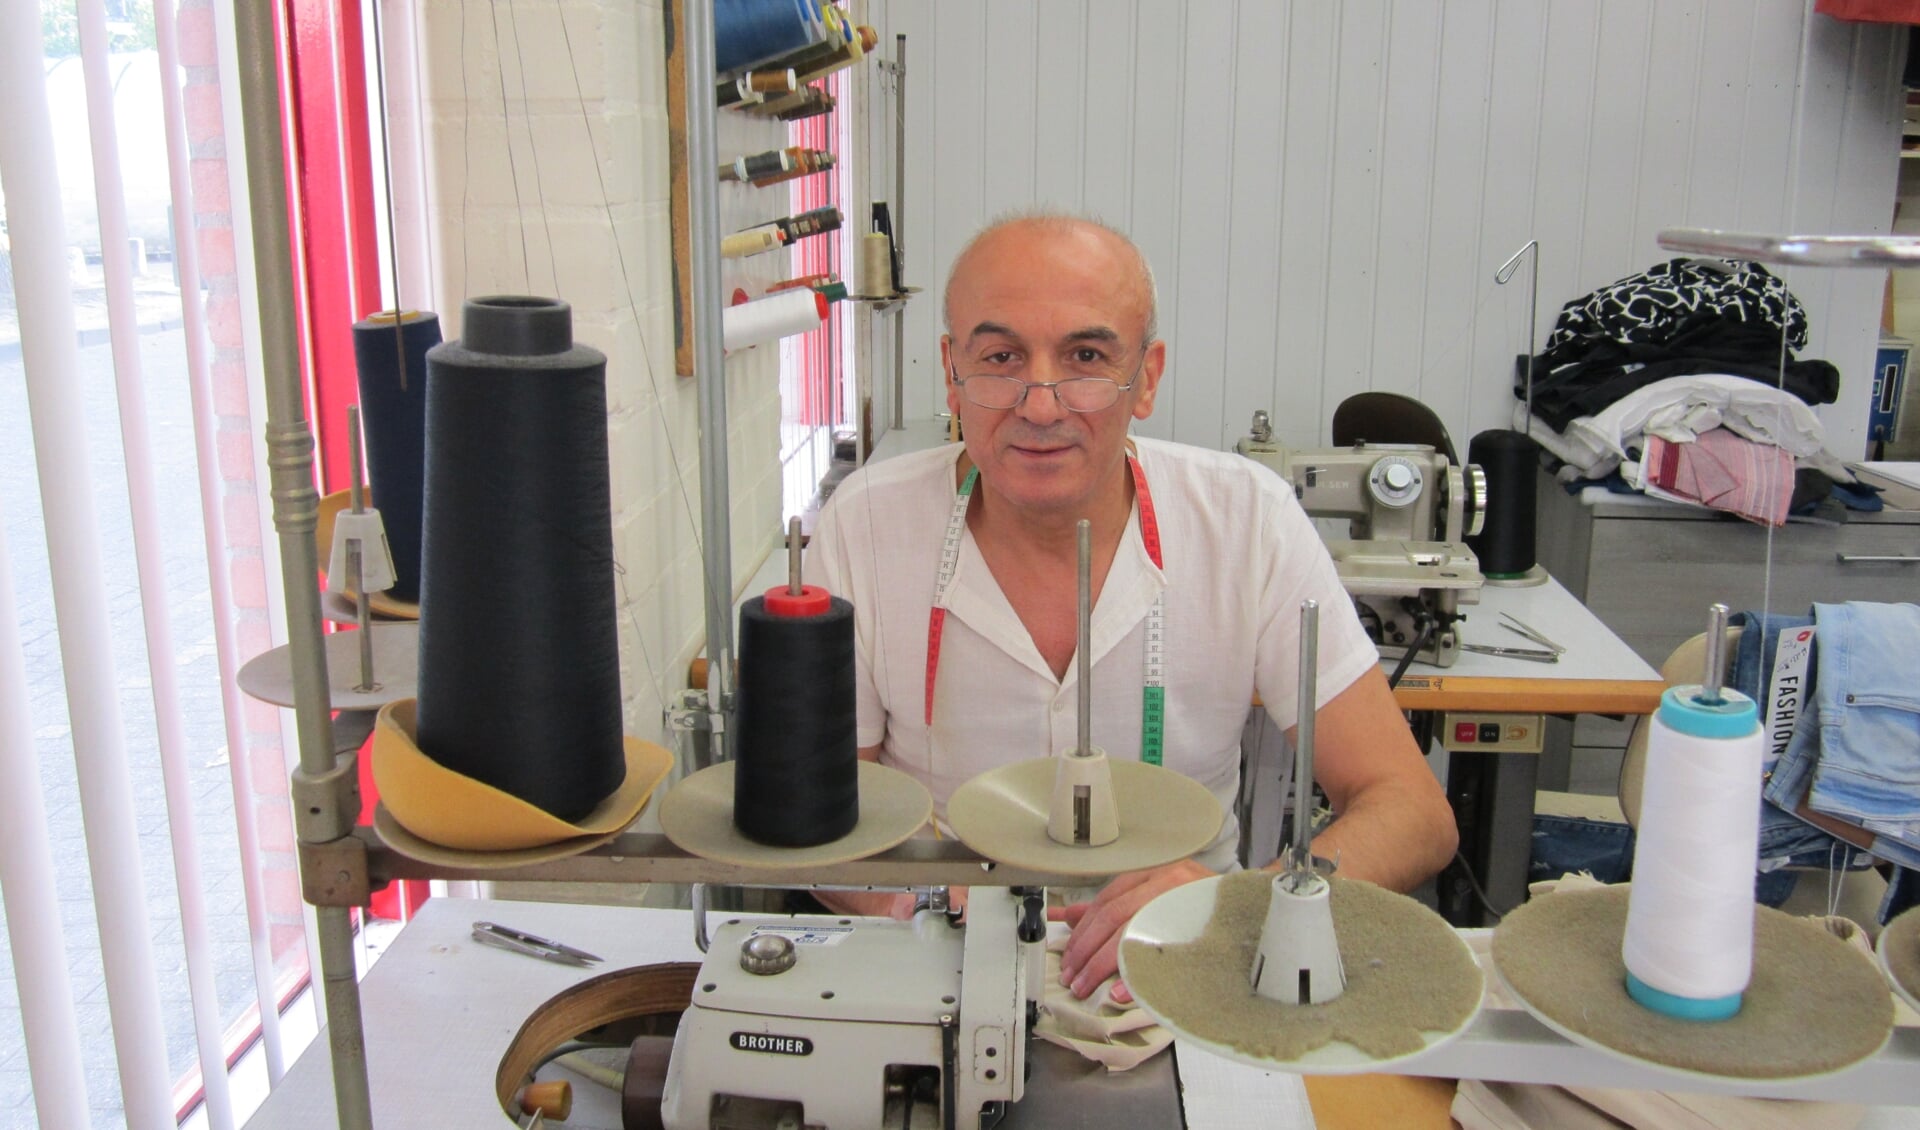 Kleermaker Hüseyin Yasar aan het werk in zijn atelier.